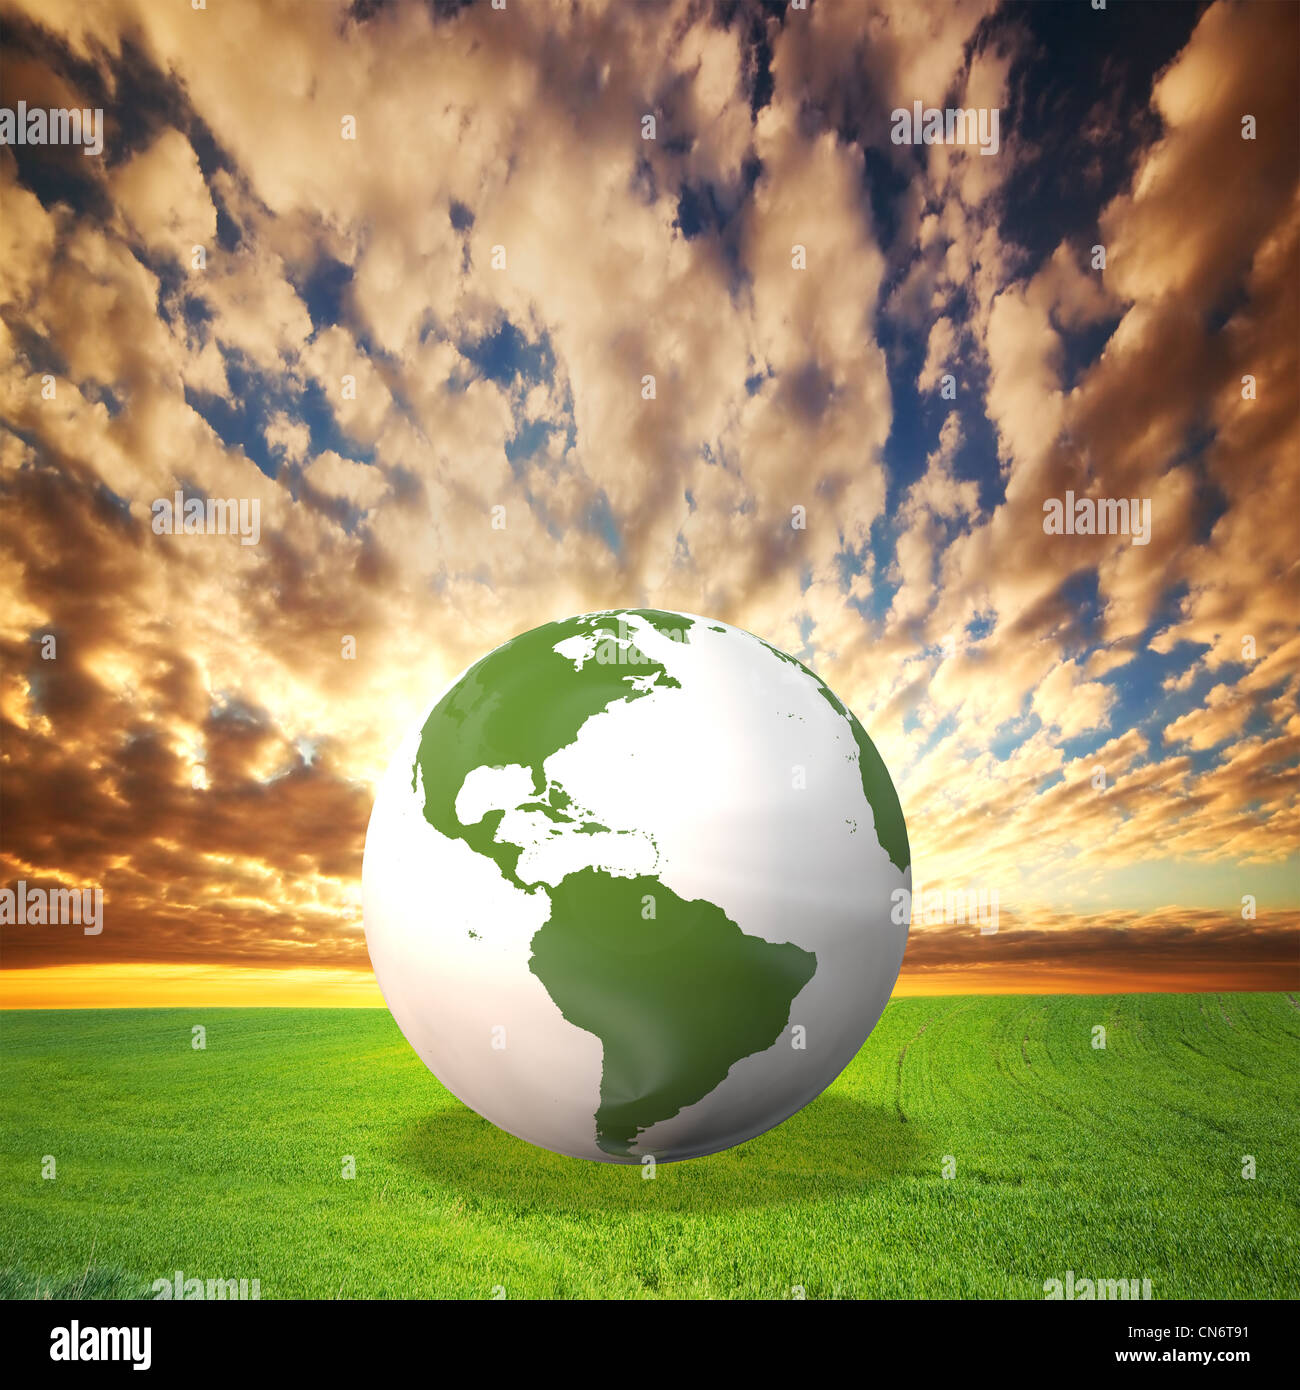 Planet Erde Modell auf der grünen Wiese bei Sonnenuntergang. Umwelt, Ökologie, saubere Energiekonzepte Stockfoto